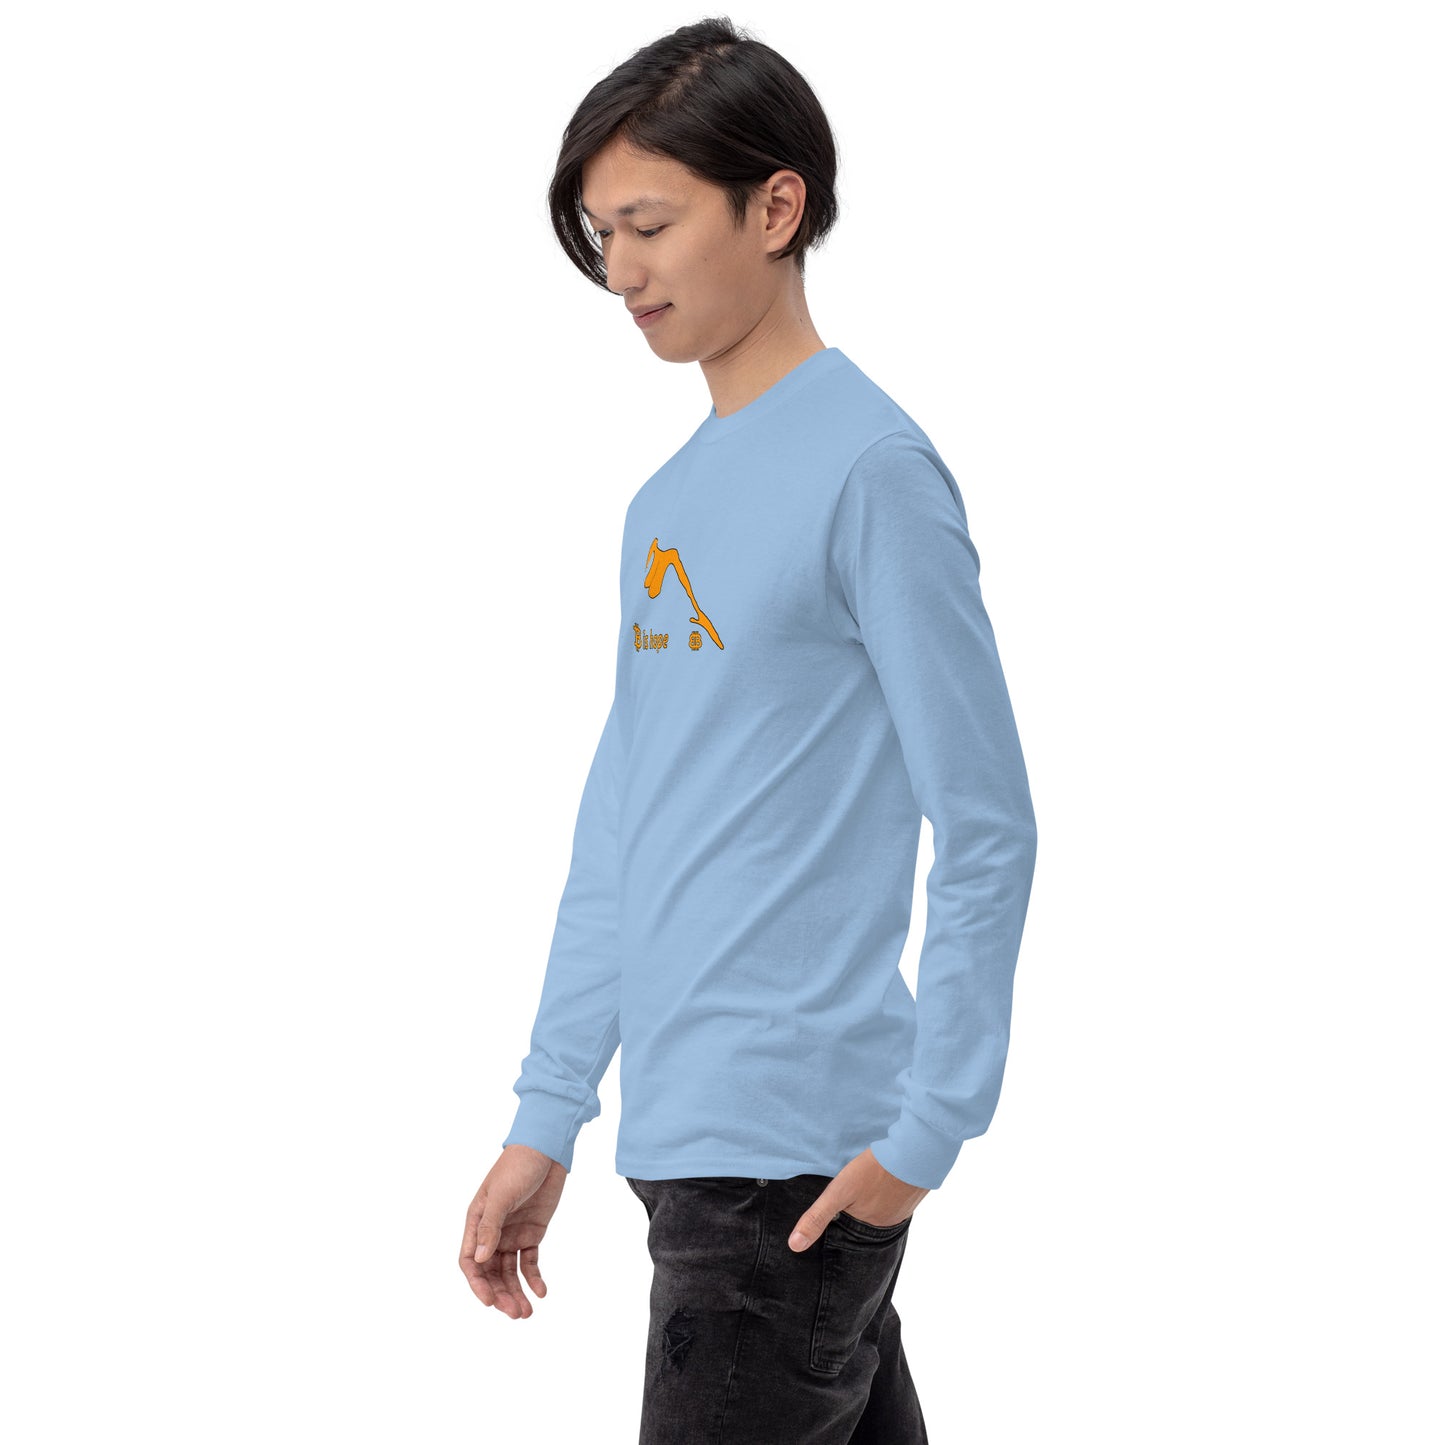 Unisex Long Sleeve Shirt "Hope"